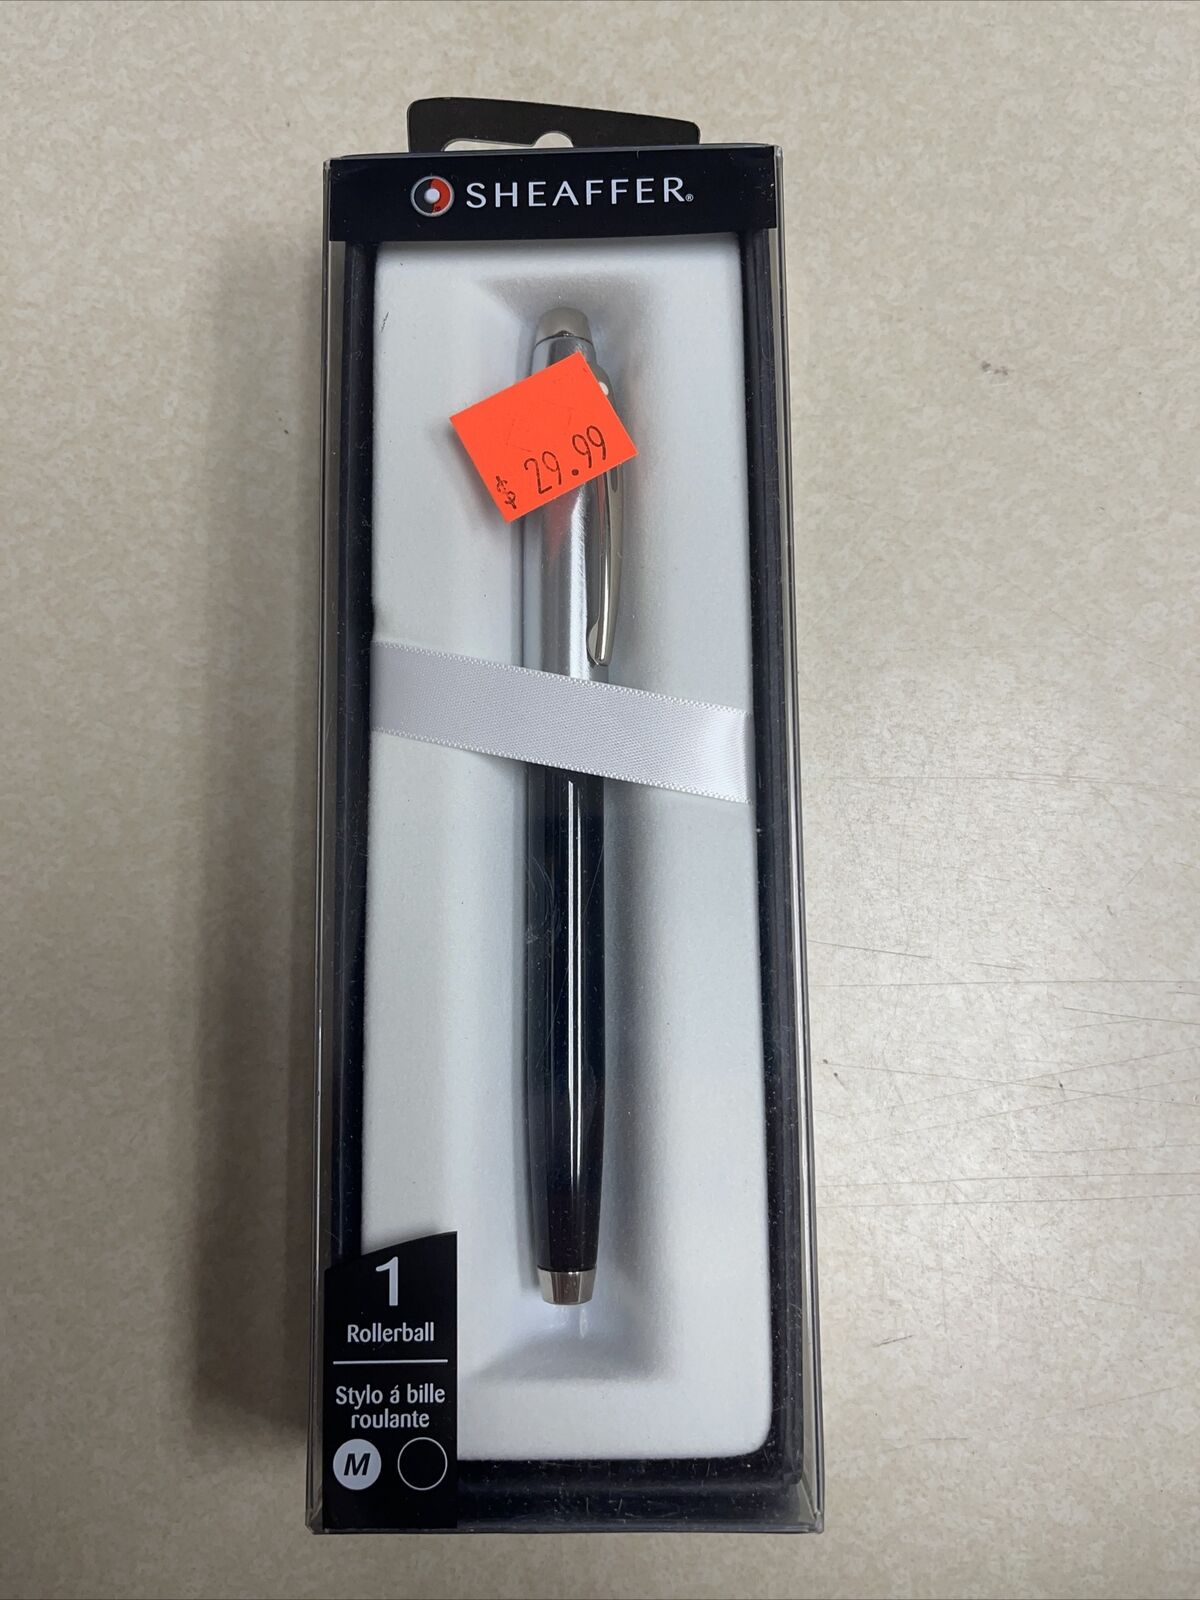 Sheaffer 100 Rollerball Pen, Black & Chrome, Brand New